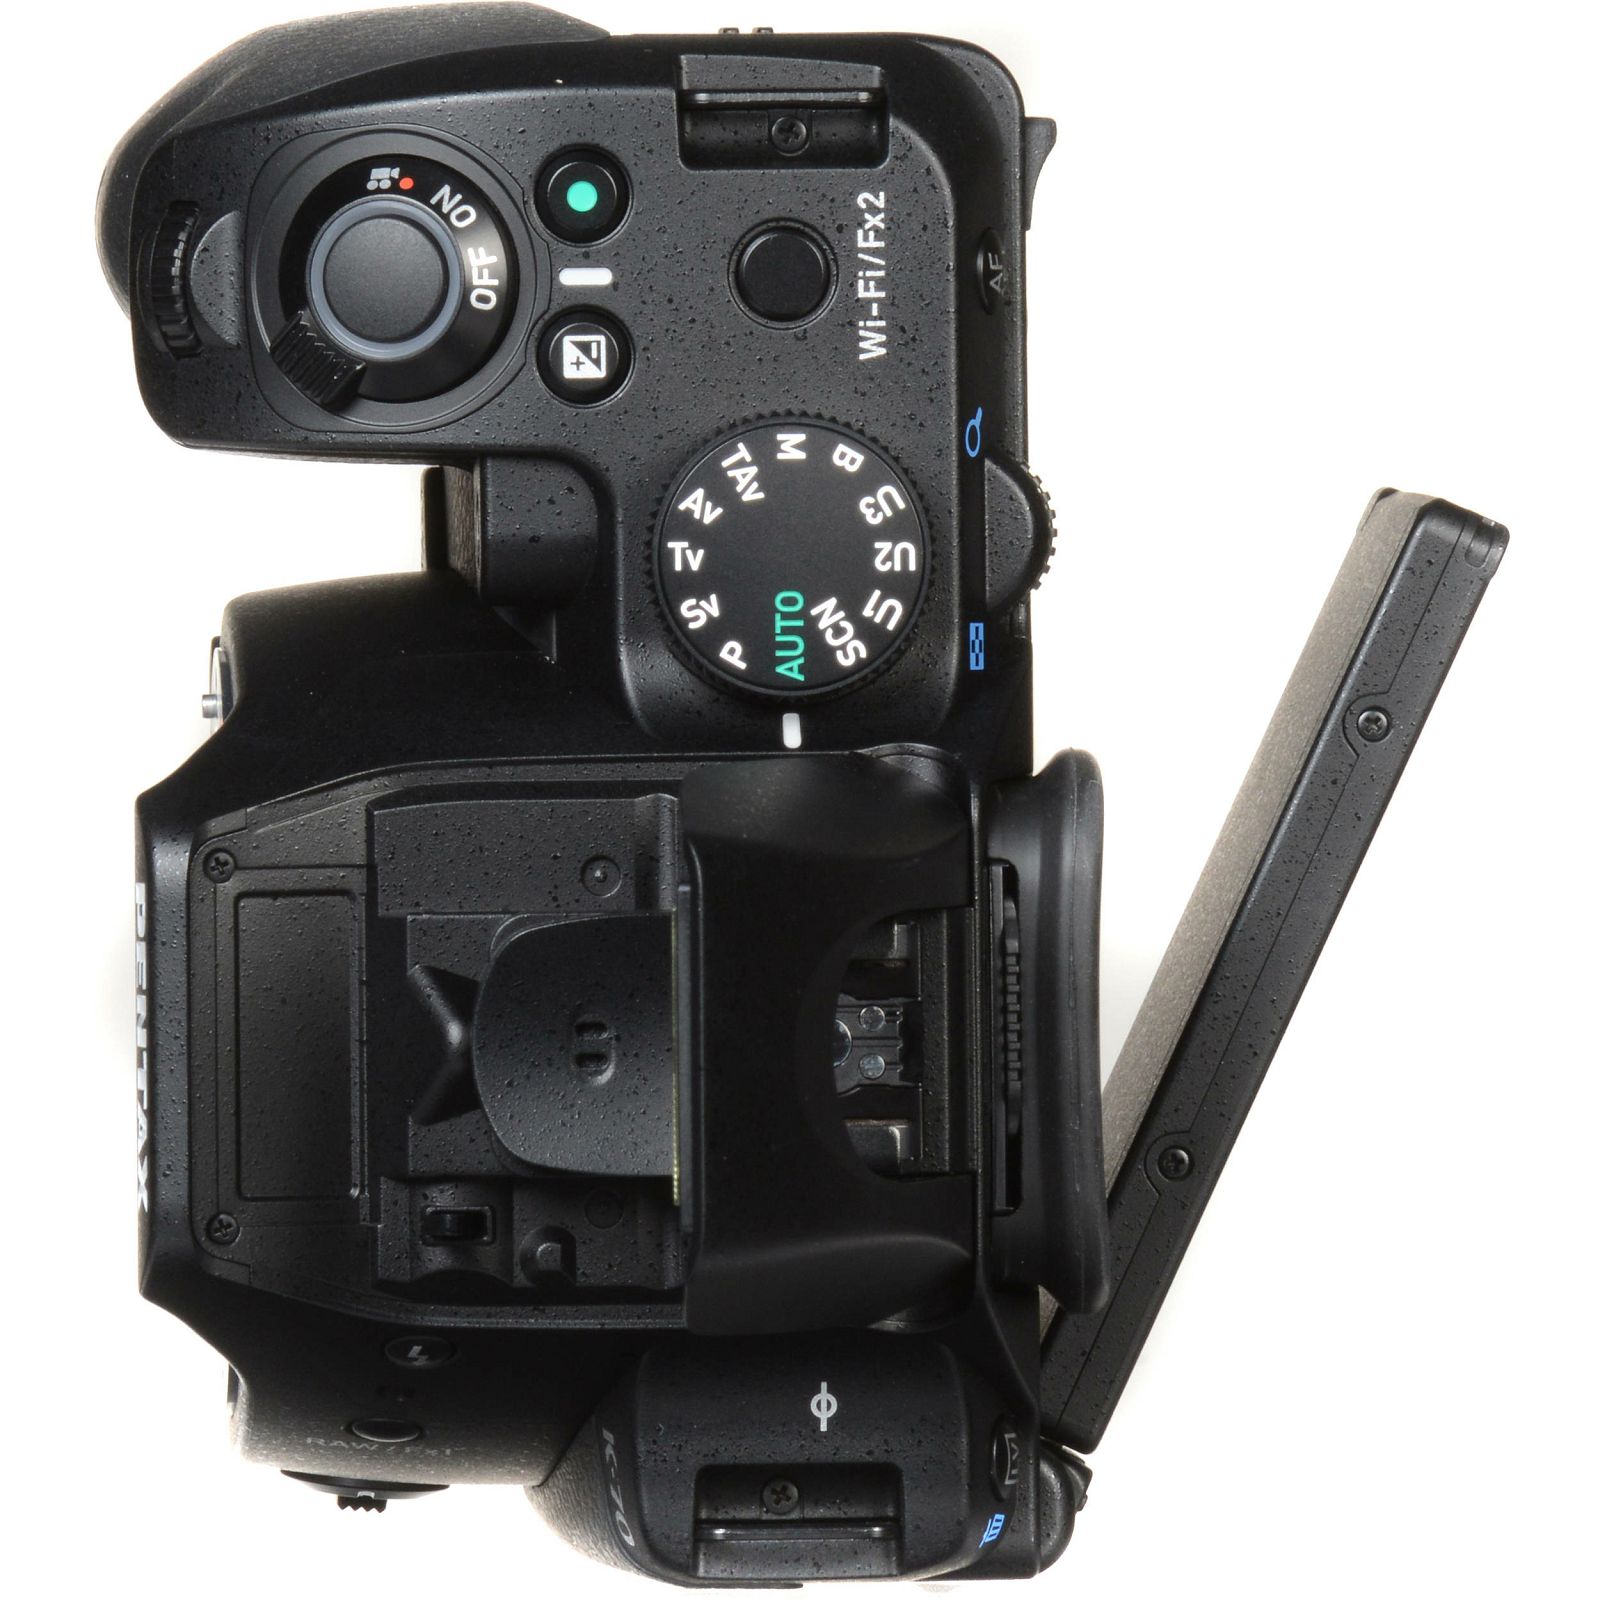 Pentax K-70 + 18-50mm f/4-5.6 DC WR RE Black KIT DSLR Crni Digitalni fotoaparat HD DA 18-50 f/4.0-5.6 f4-5.6 4-5.6 (16294)